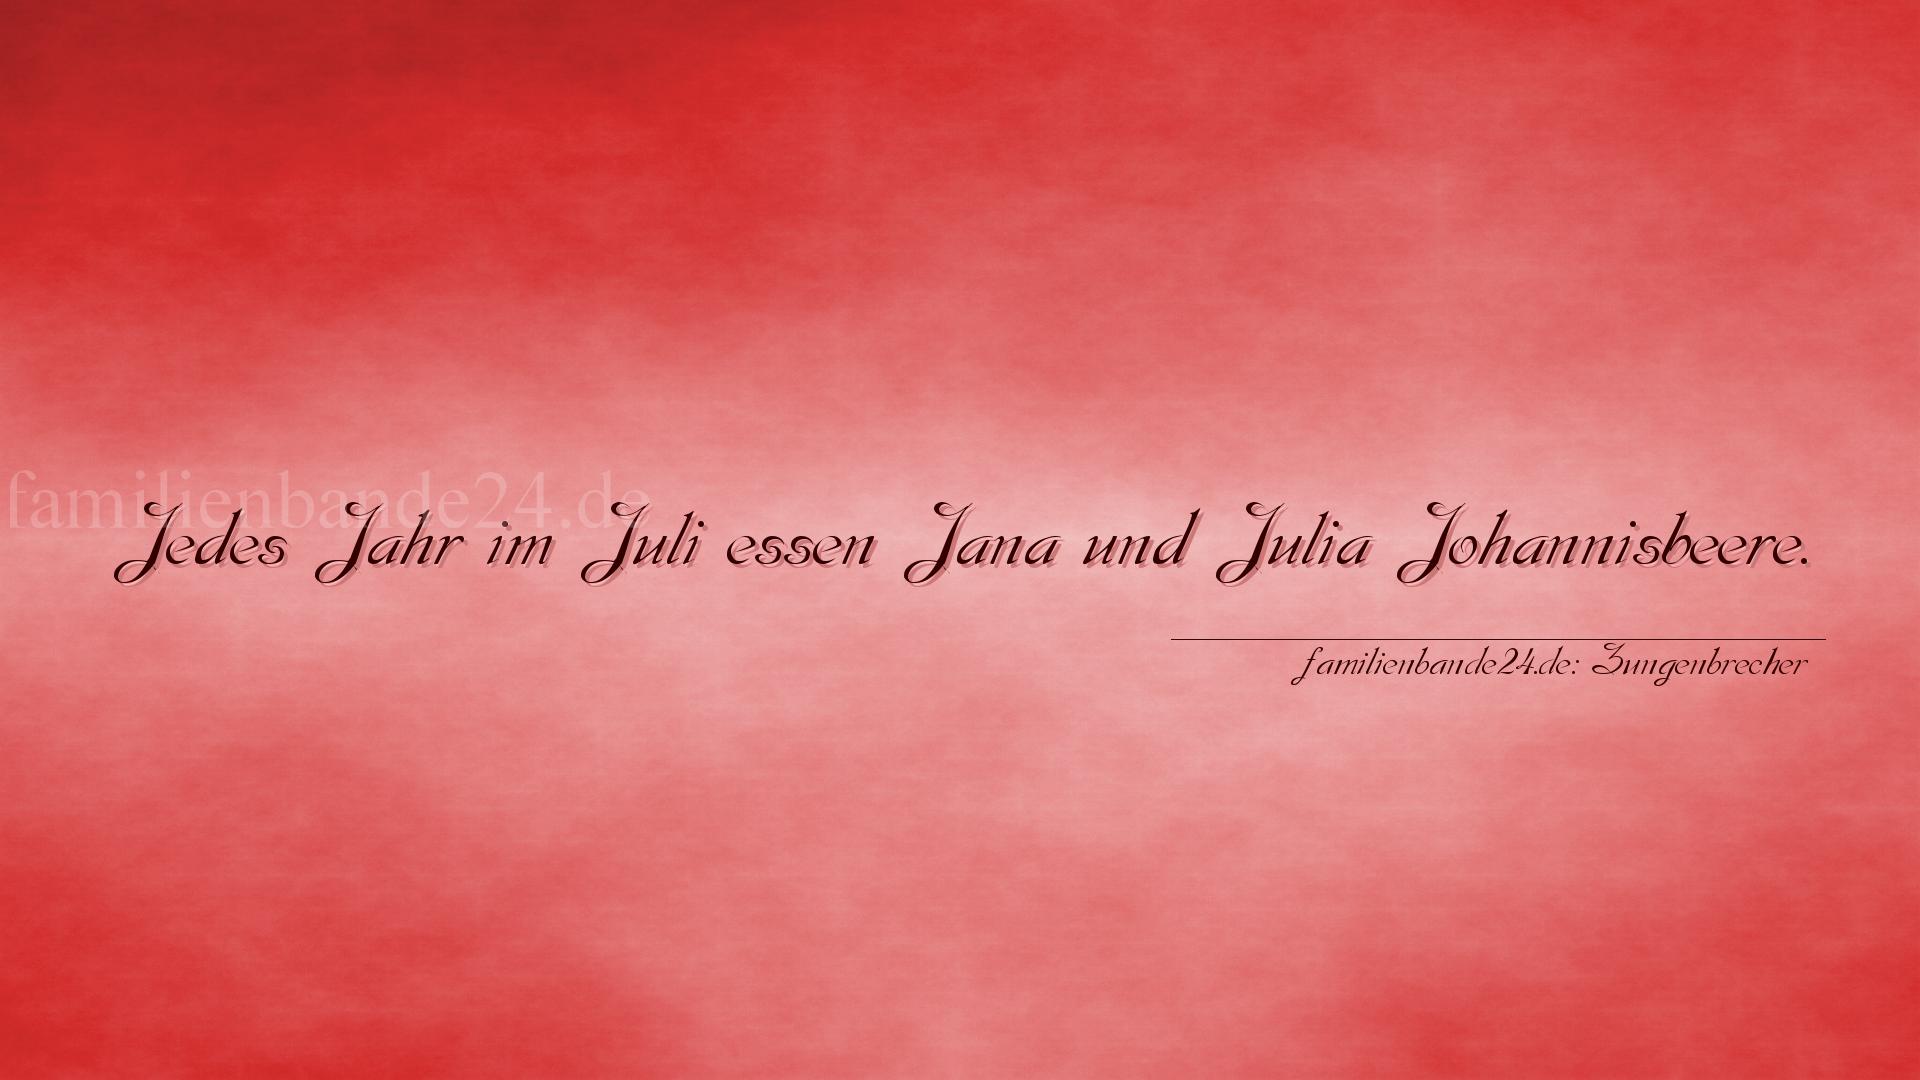 Zungenbrecher Nr. 759: Jedes Jahr im Juli essen Jana und Julia Johannisbeere.